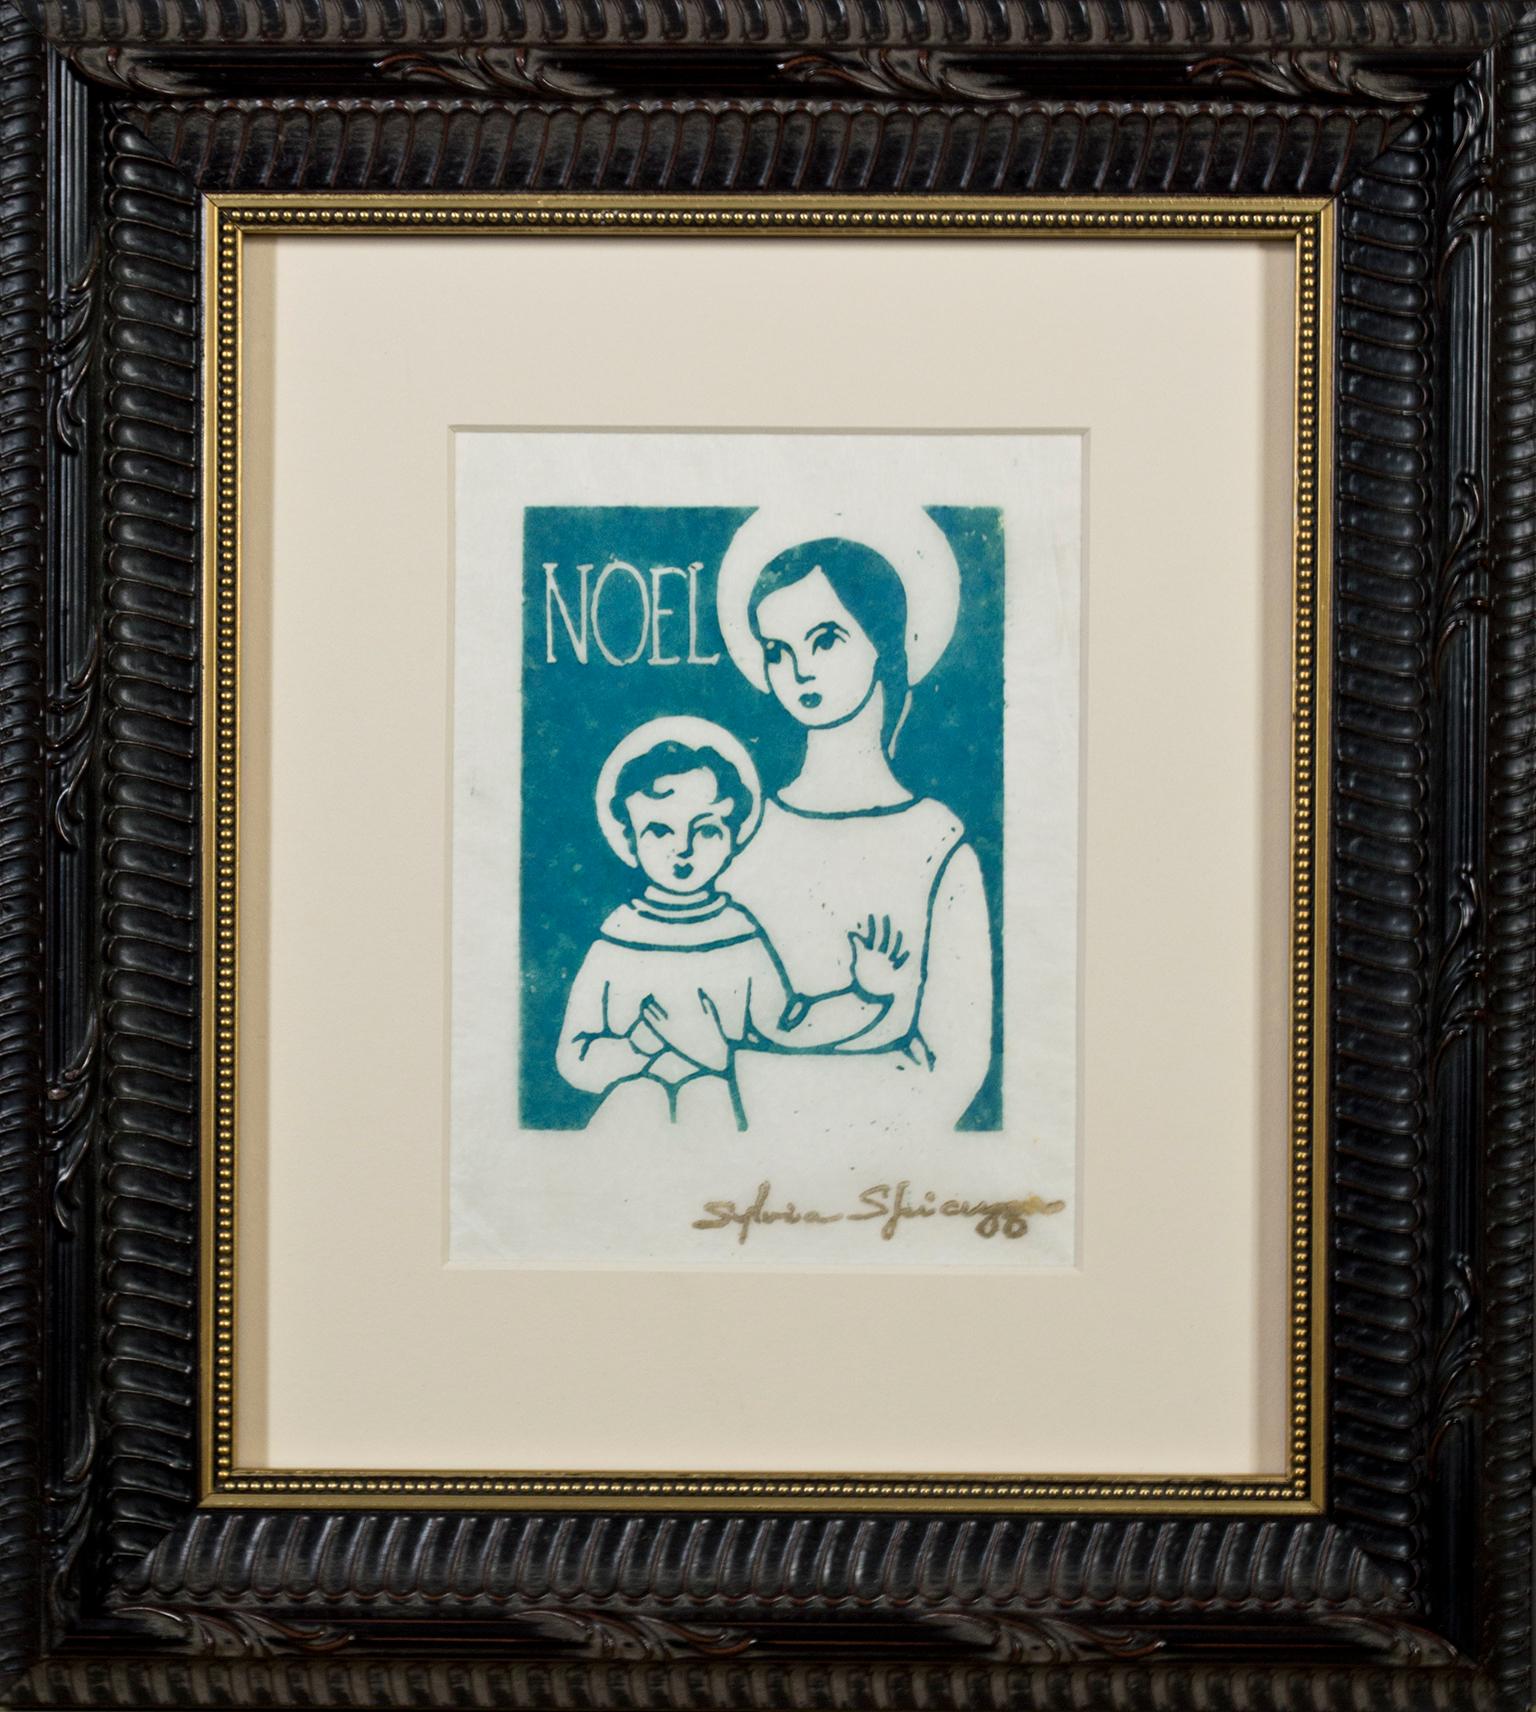 „Noel“, religiöser Linoschliff in Blau auf Tissue-Papier, signiert von Sylvia Spicuzza